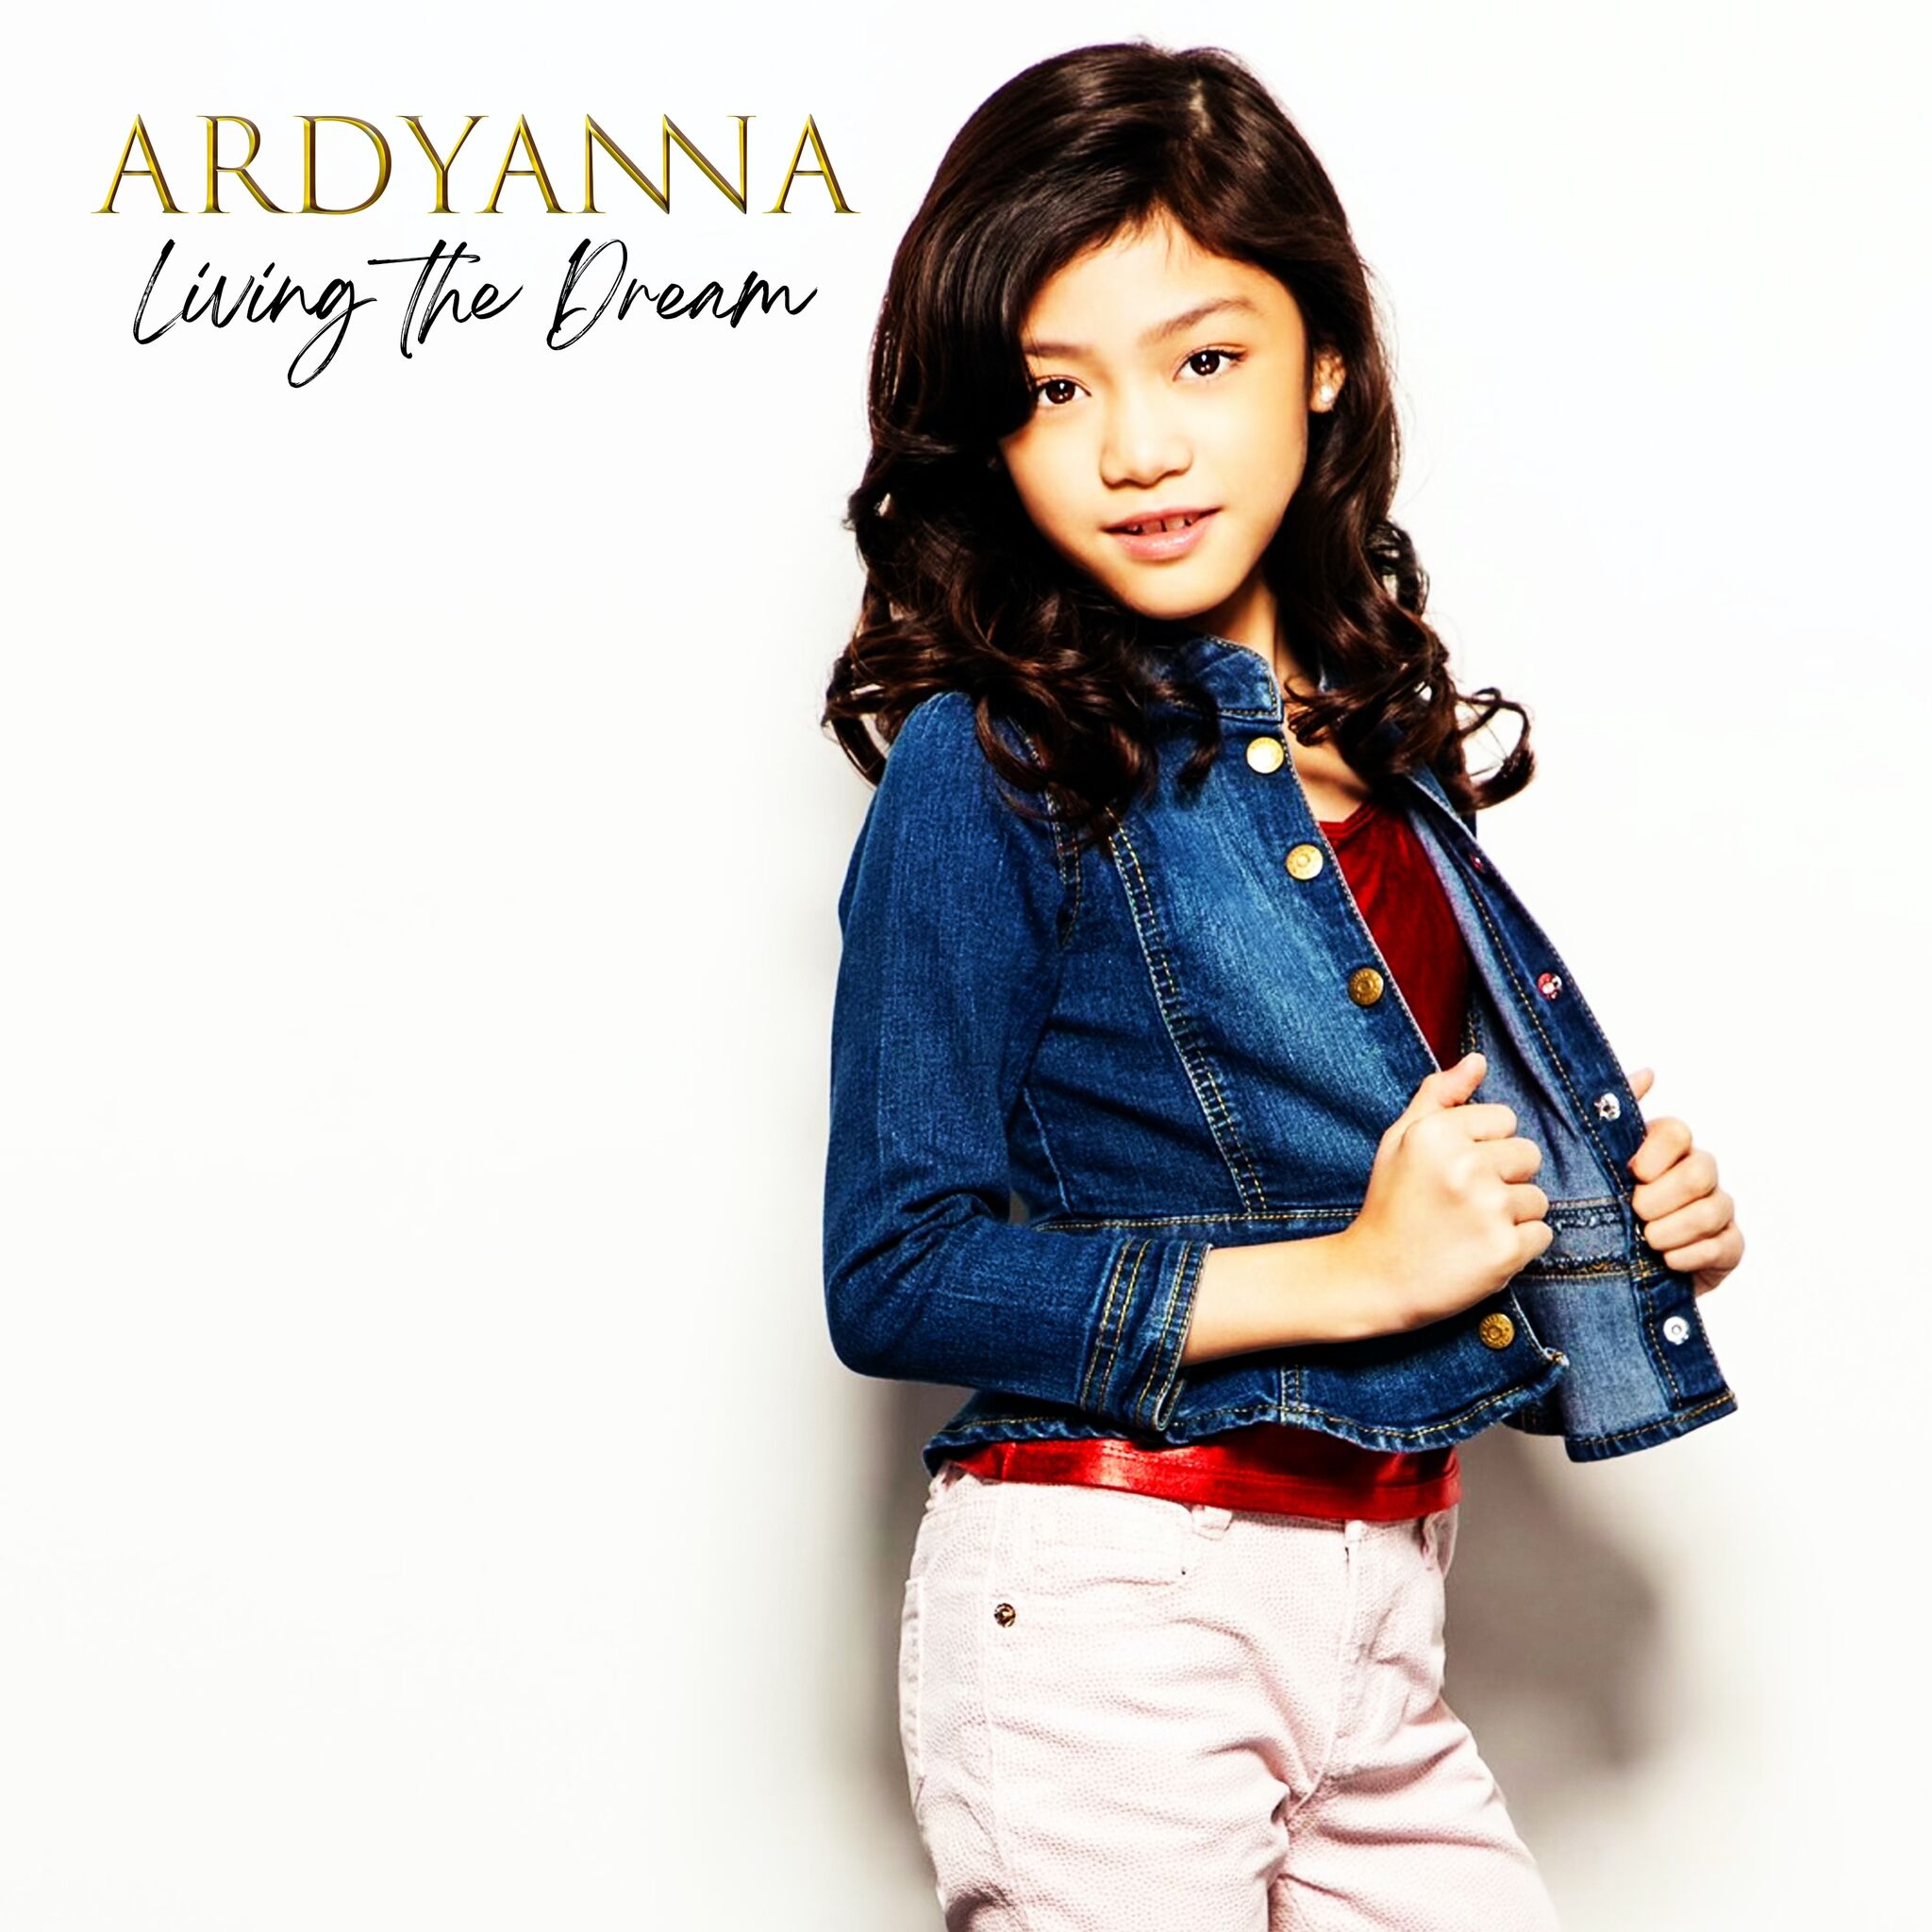 Ardyanna  "Living The Dream"